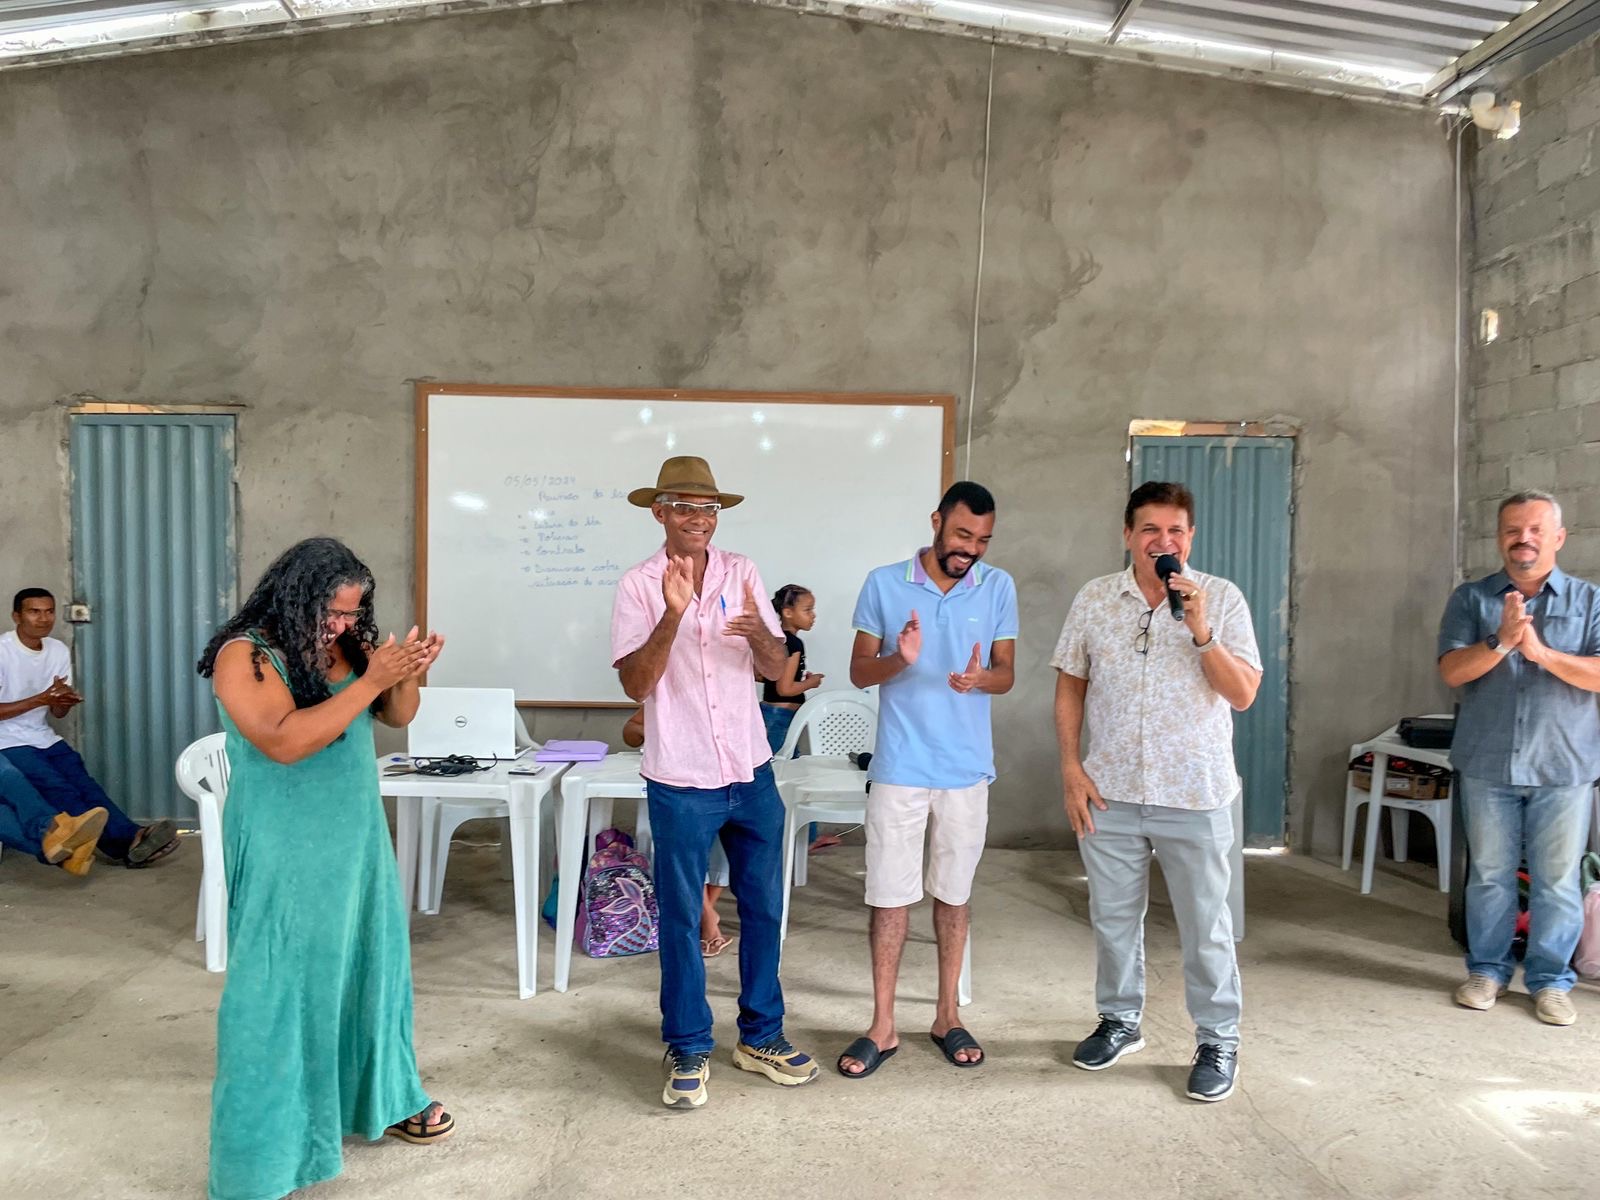 Prefeitura de Eunpolis e vereador Gildair realizam o sonho da comunidade 2 de Julho com a entrega de poo artesiano - (Foto: Divulgao)